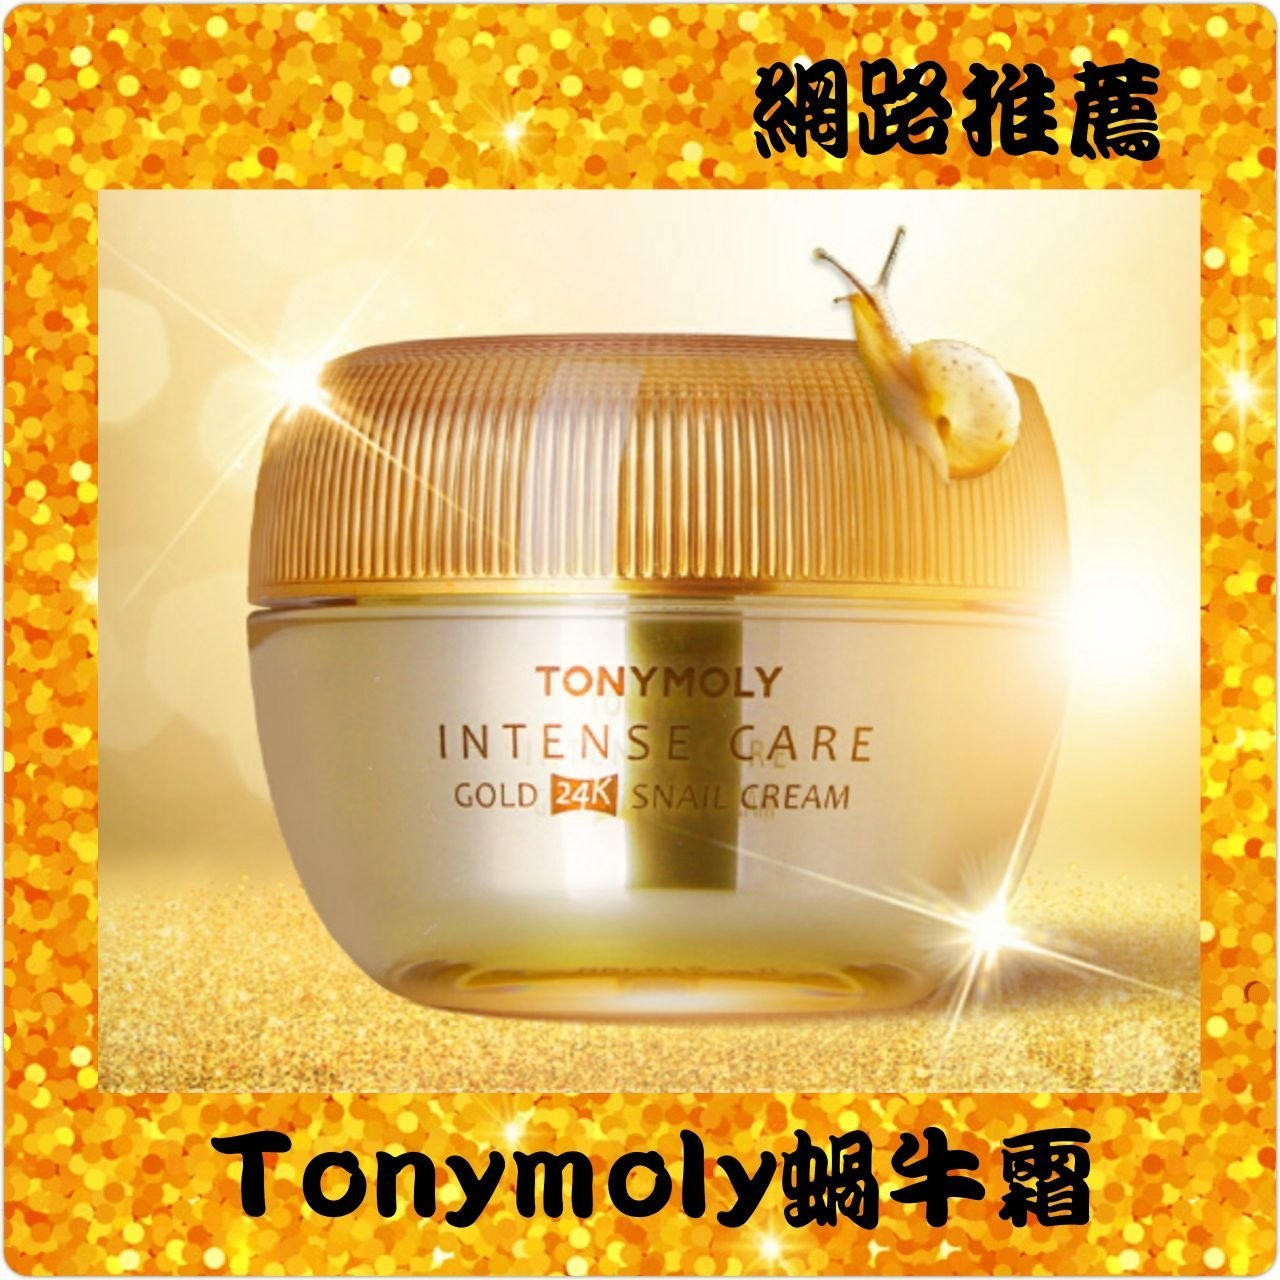 （現貨👉贈面膜2片）韓國 Tonymoly 24K黃金蝸牛保濕面霜 45ml 蝸牛霜 網路推薦商品